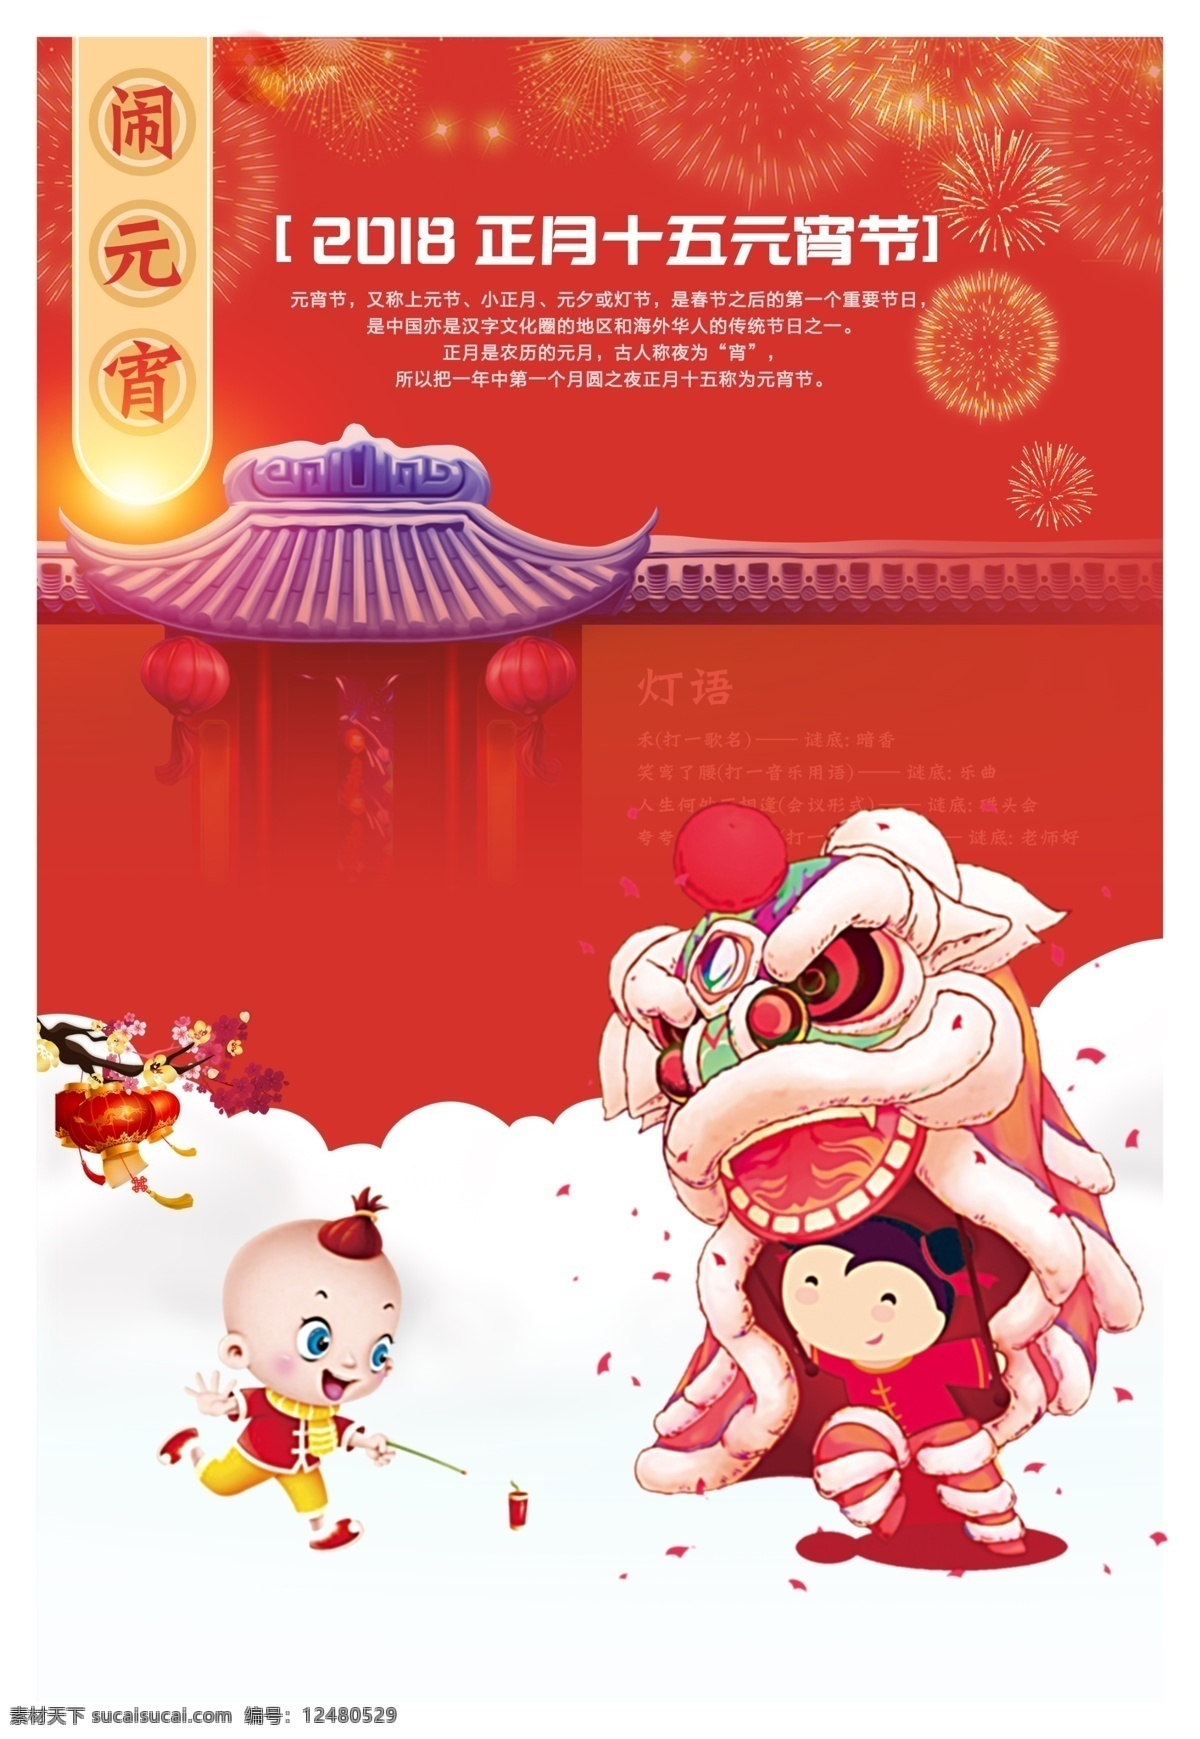 2018 元宵 佳节 竖 图 海报 中国风 喜庆 元宵节 竖图海报图 元宵节气图